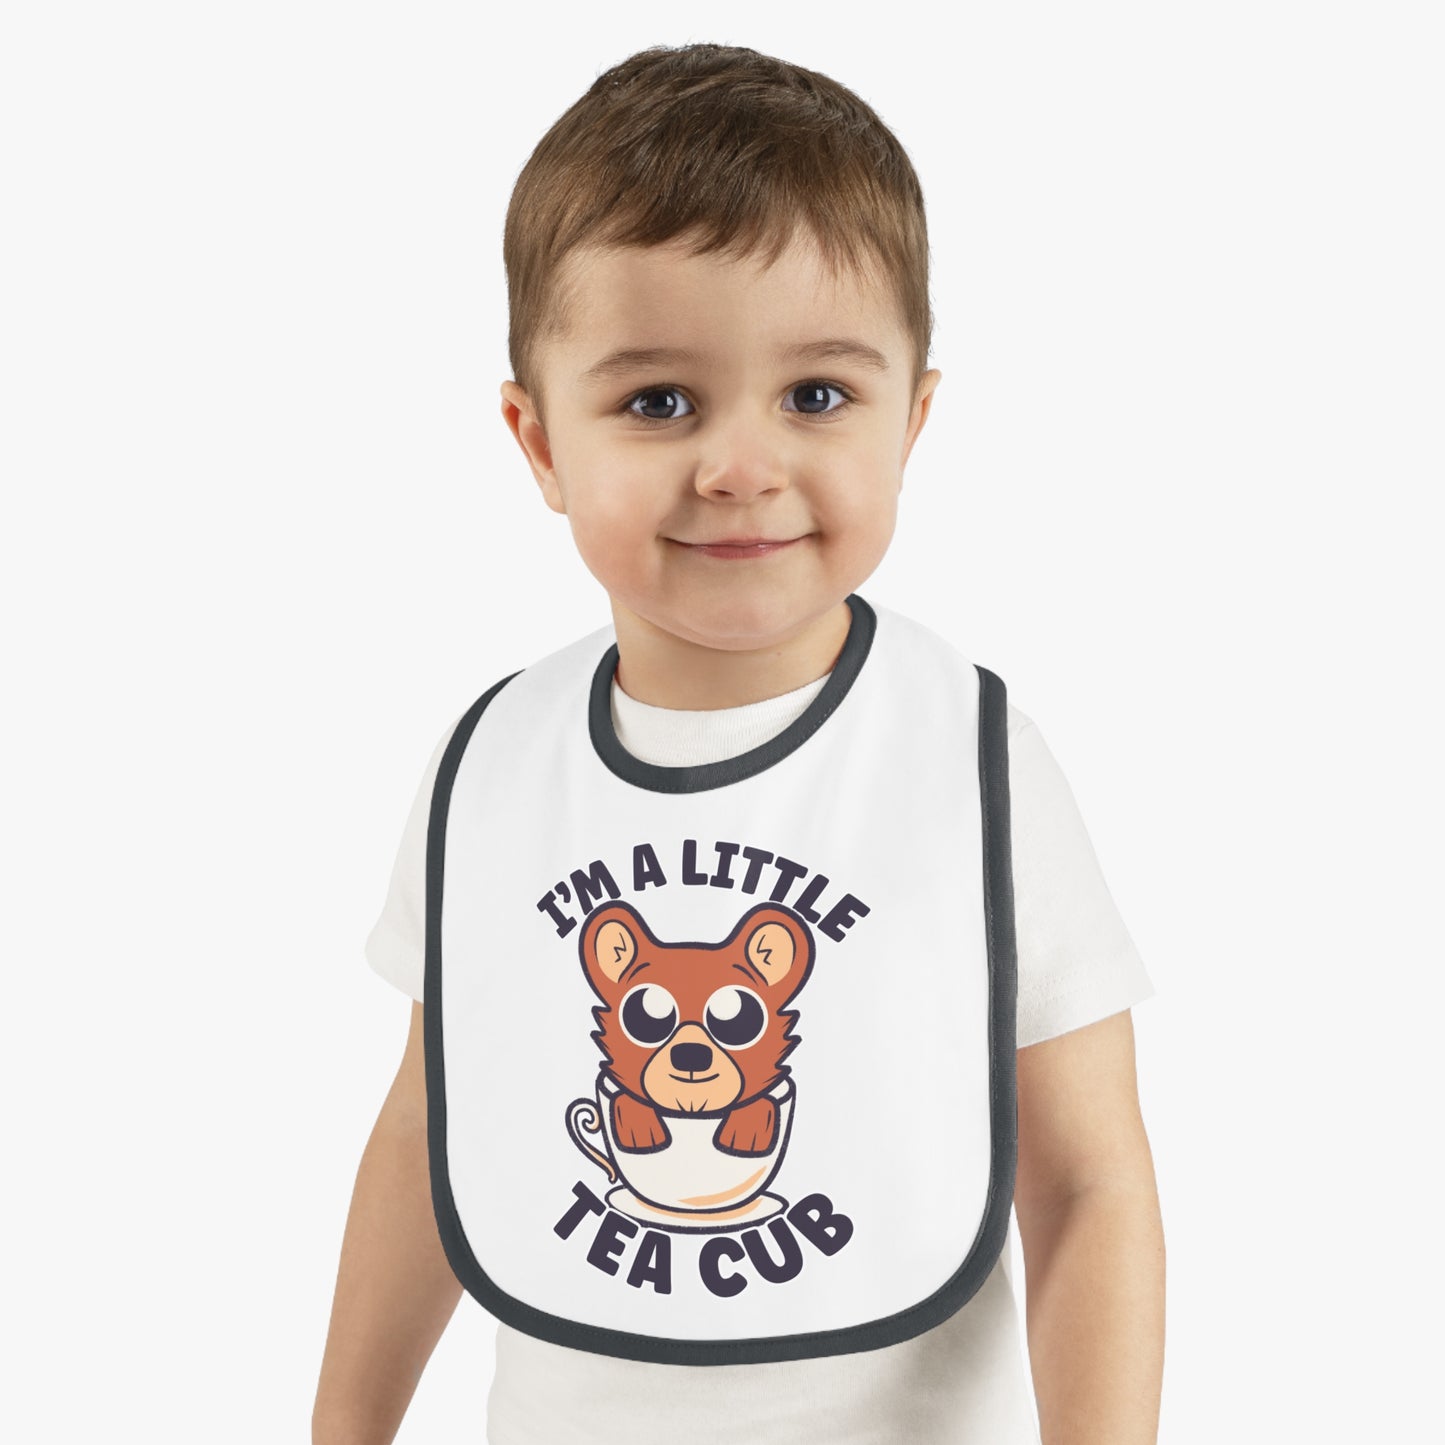 I'm a Little Tea Cub - Unique Bear Cub Baby Bib Gift for Newborn or New Parents